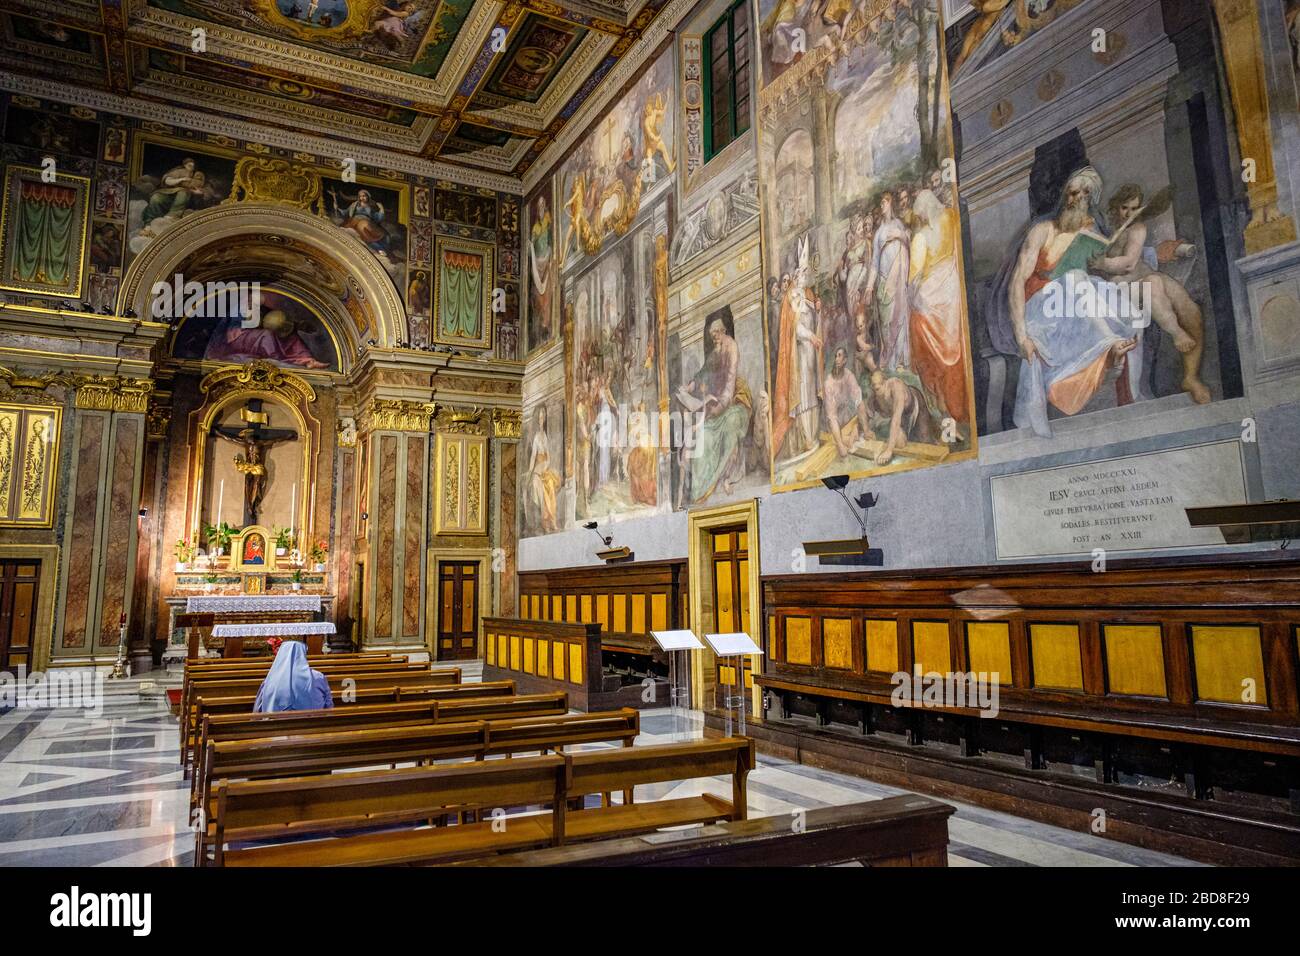 Katholische, allein christliche Nonne, Innenraum des Oratorio del Santissimo Crocifisso (Oratorium des Allerheiligsten Kruzifixes), manieristische Gemälde, Rom, Italien. Stockfoto